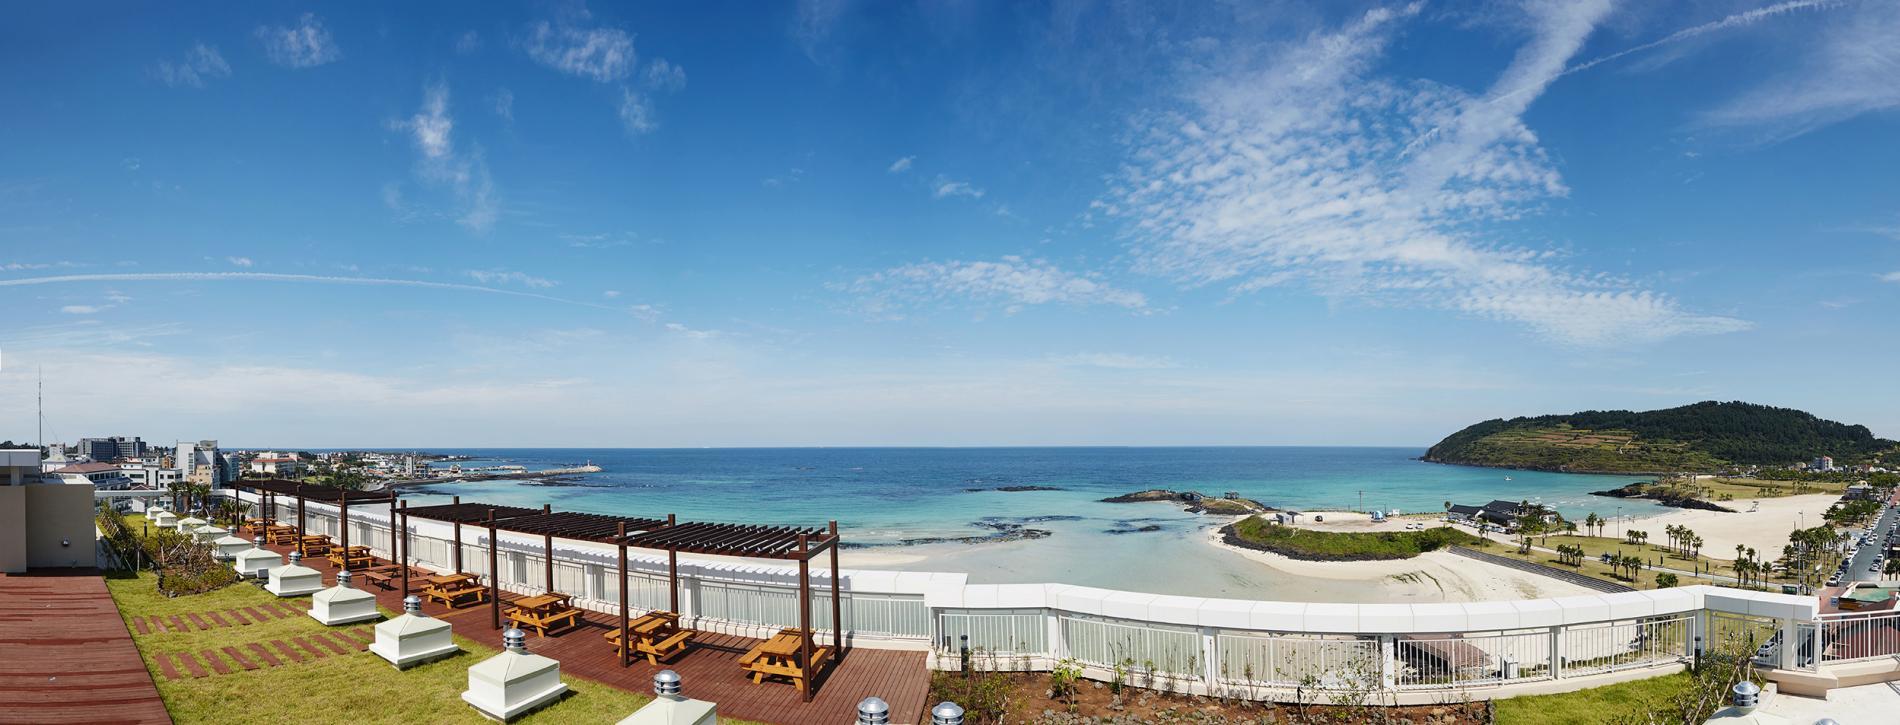 Artstay Hamdeok Beach Hotel